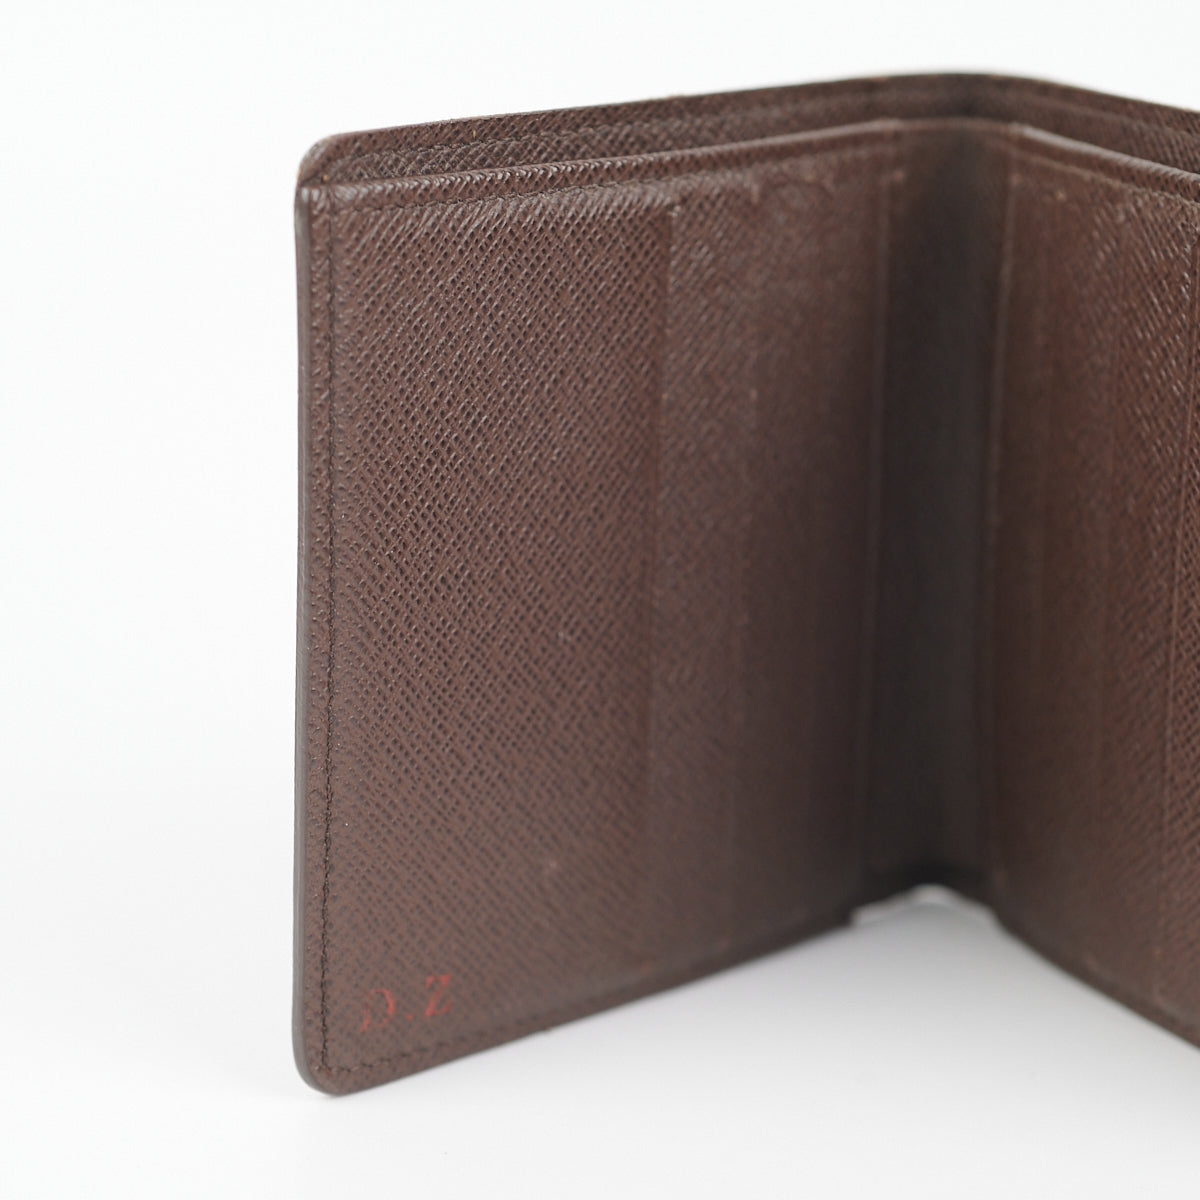 Authentic Louis Vuitton Wallet— Continental CA0188 Damier Ebene